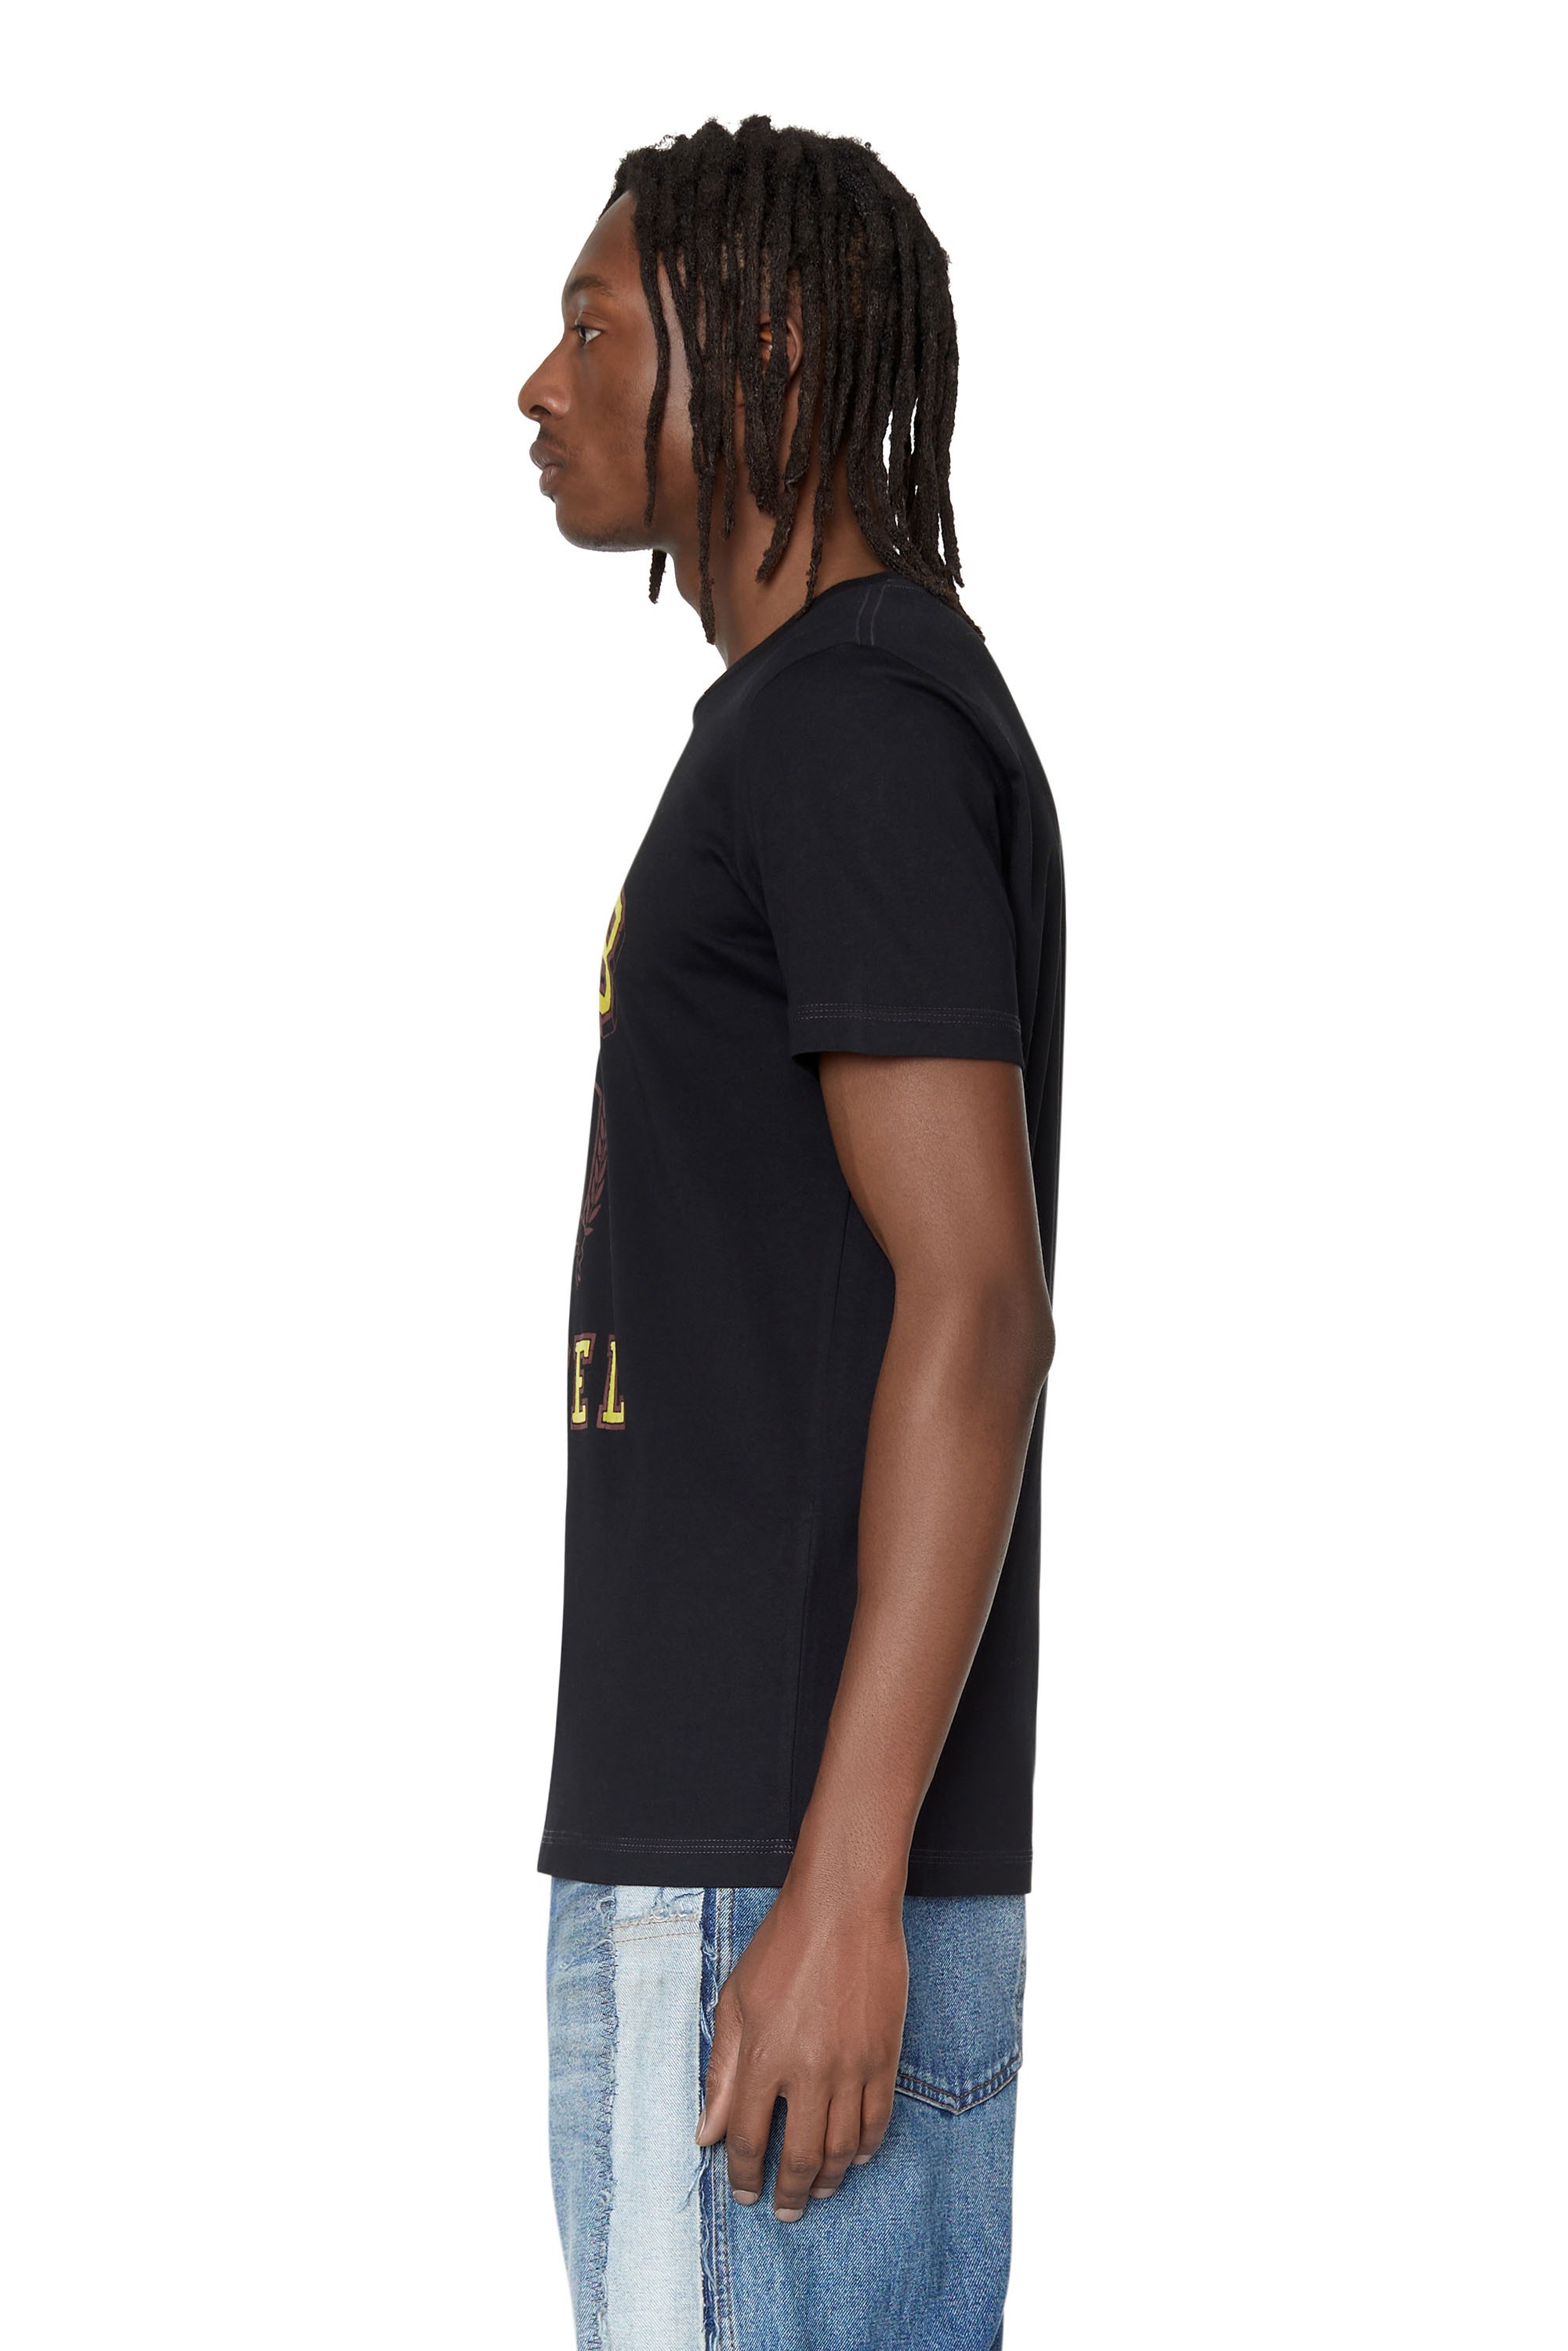 Men's T-shirts: Round Nek, V-Nek| Shop on Diesel.com